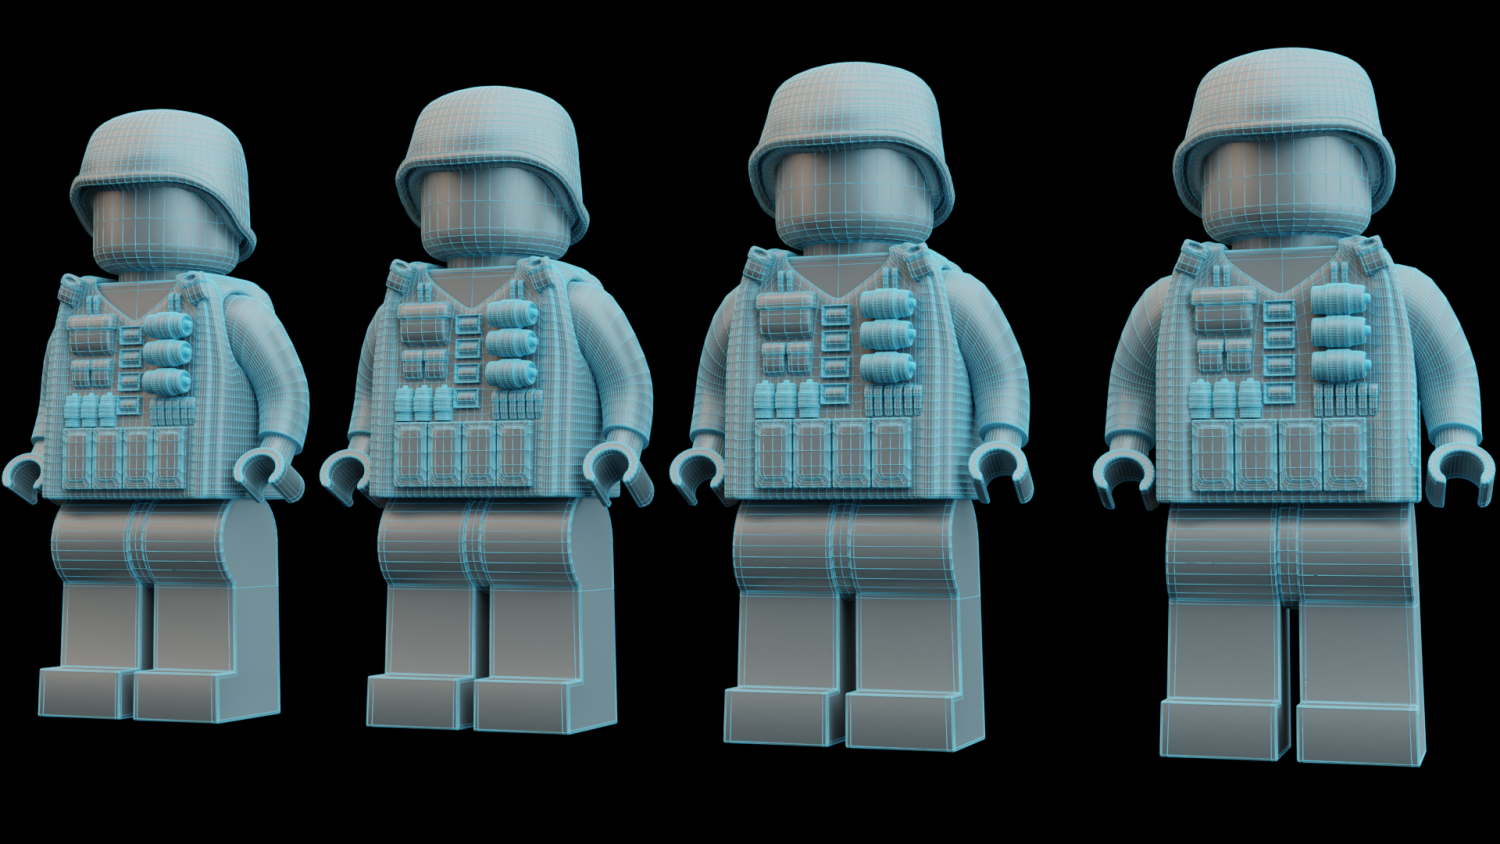 Lego WW2 Soldier 3D model